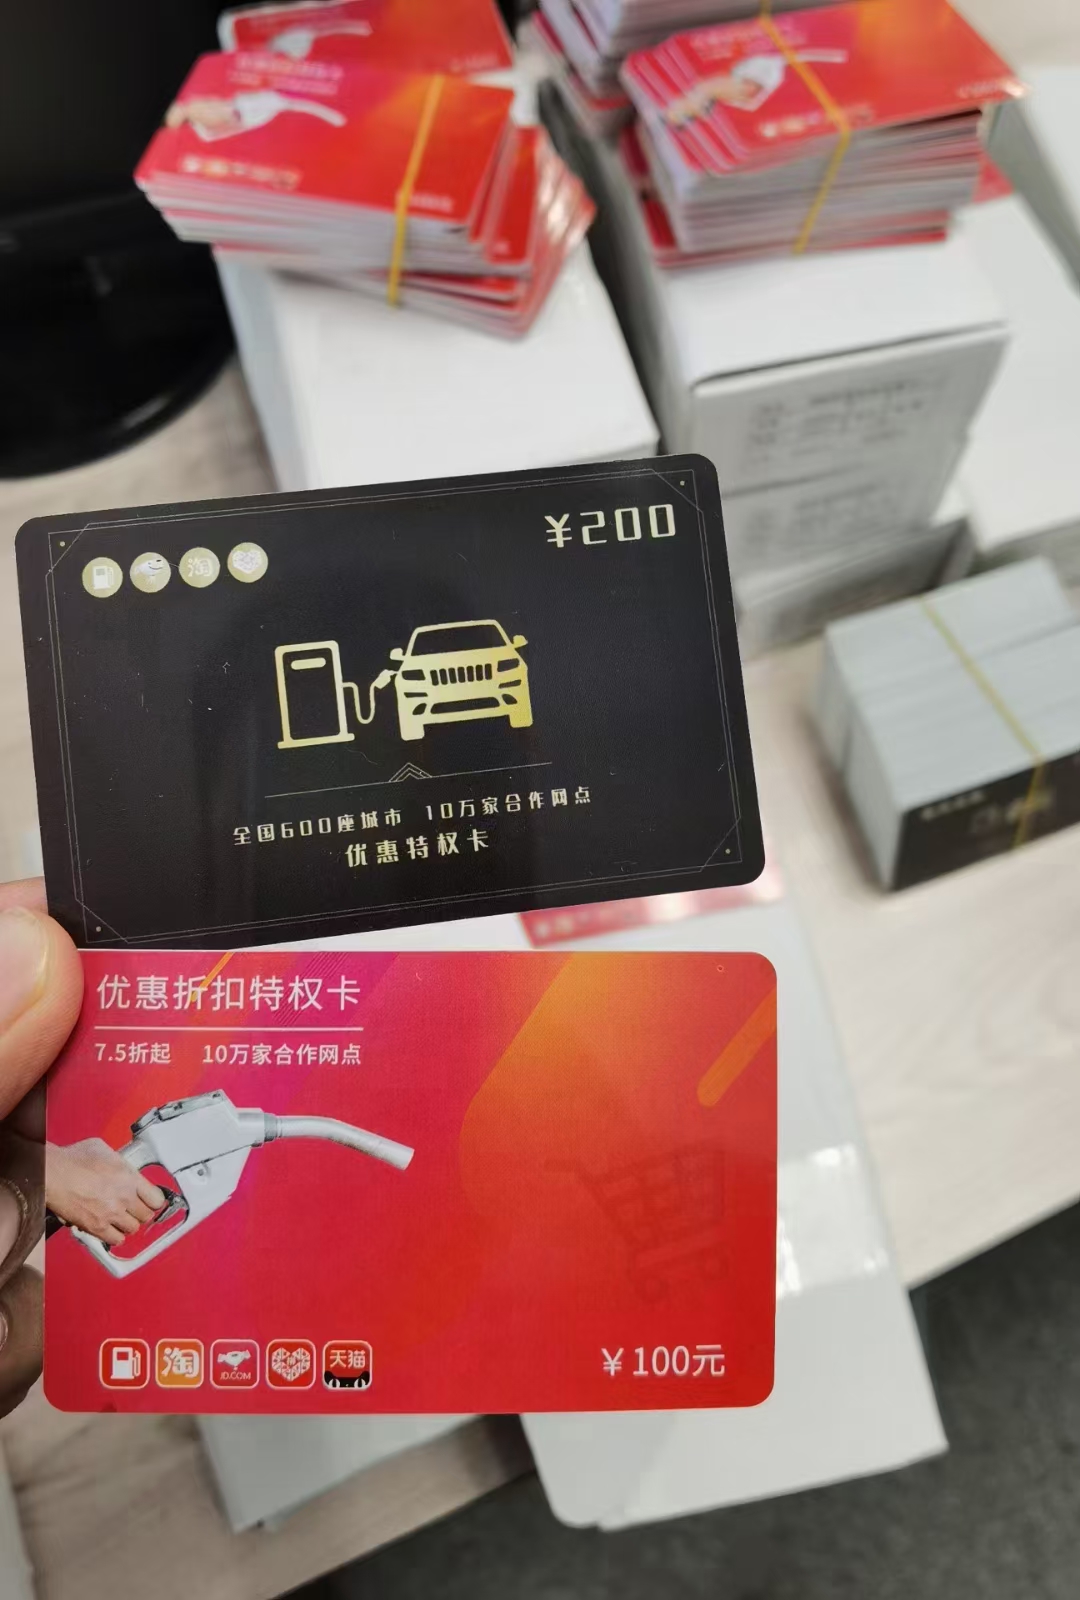 晋城加油8折软件优惠加油卡系统 加油折扣卡源头